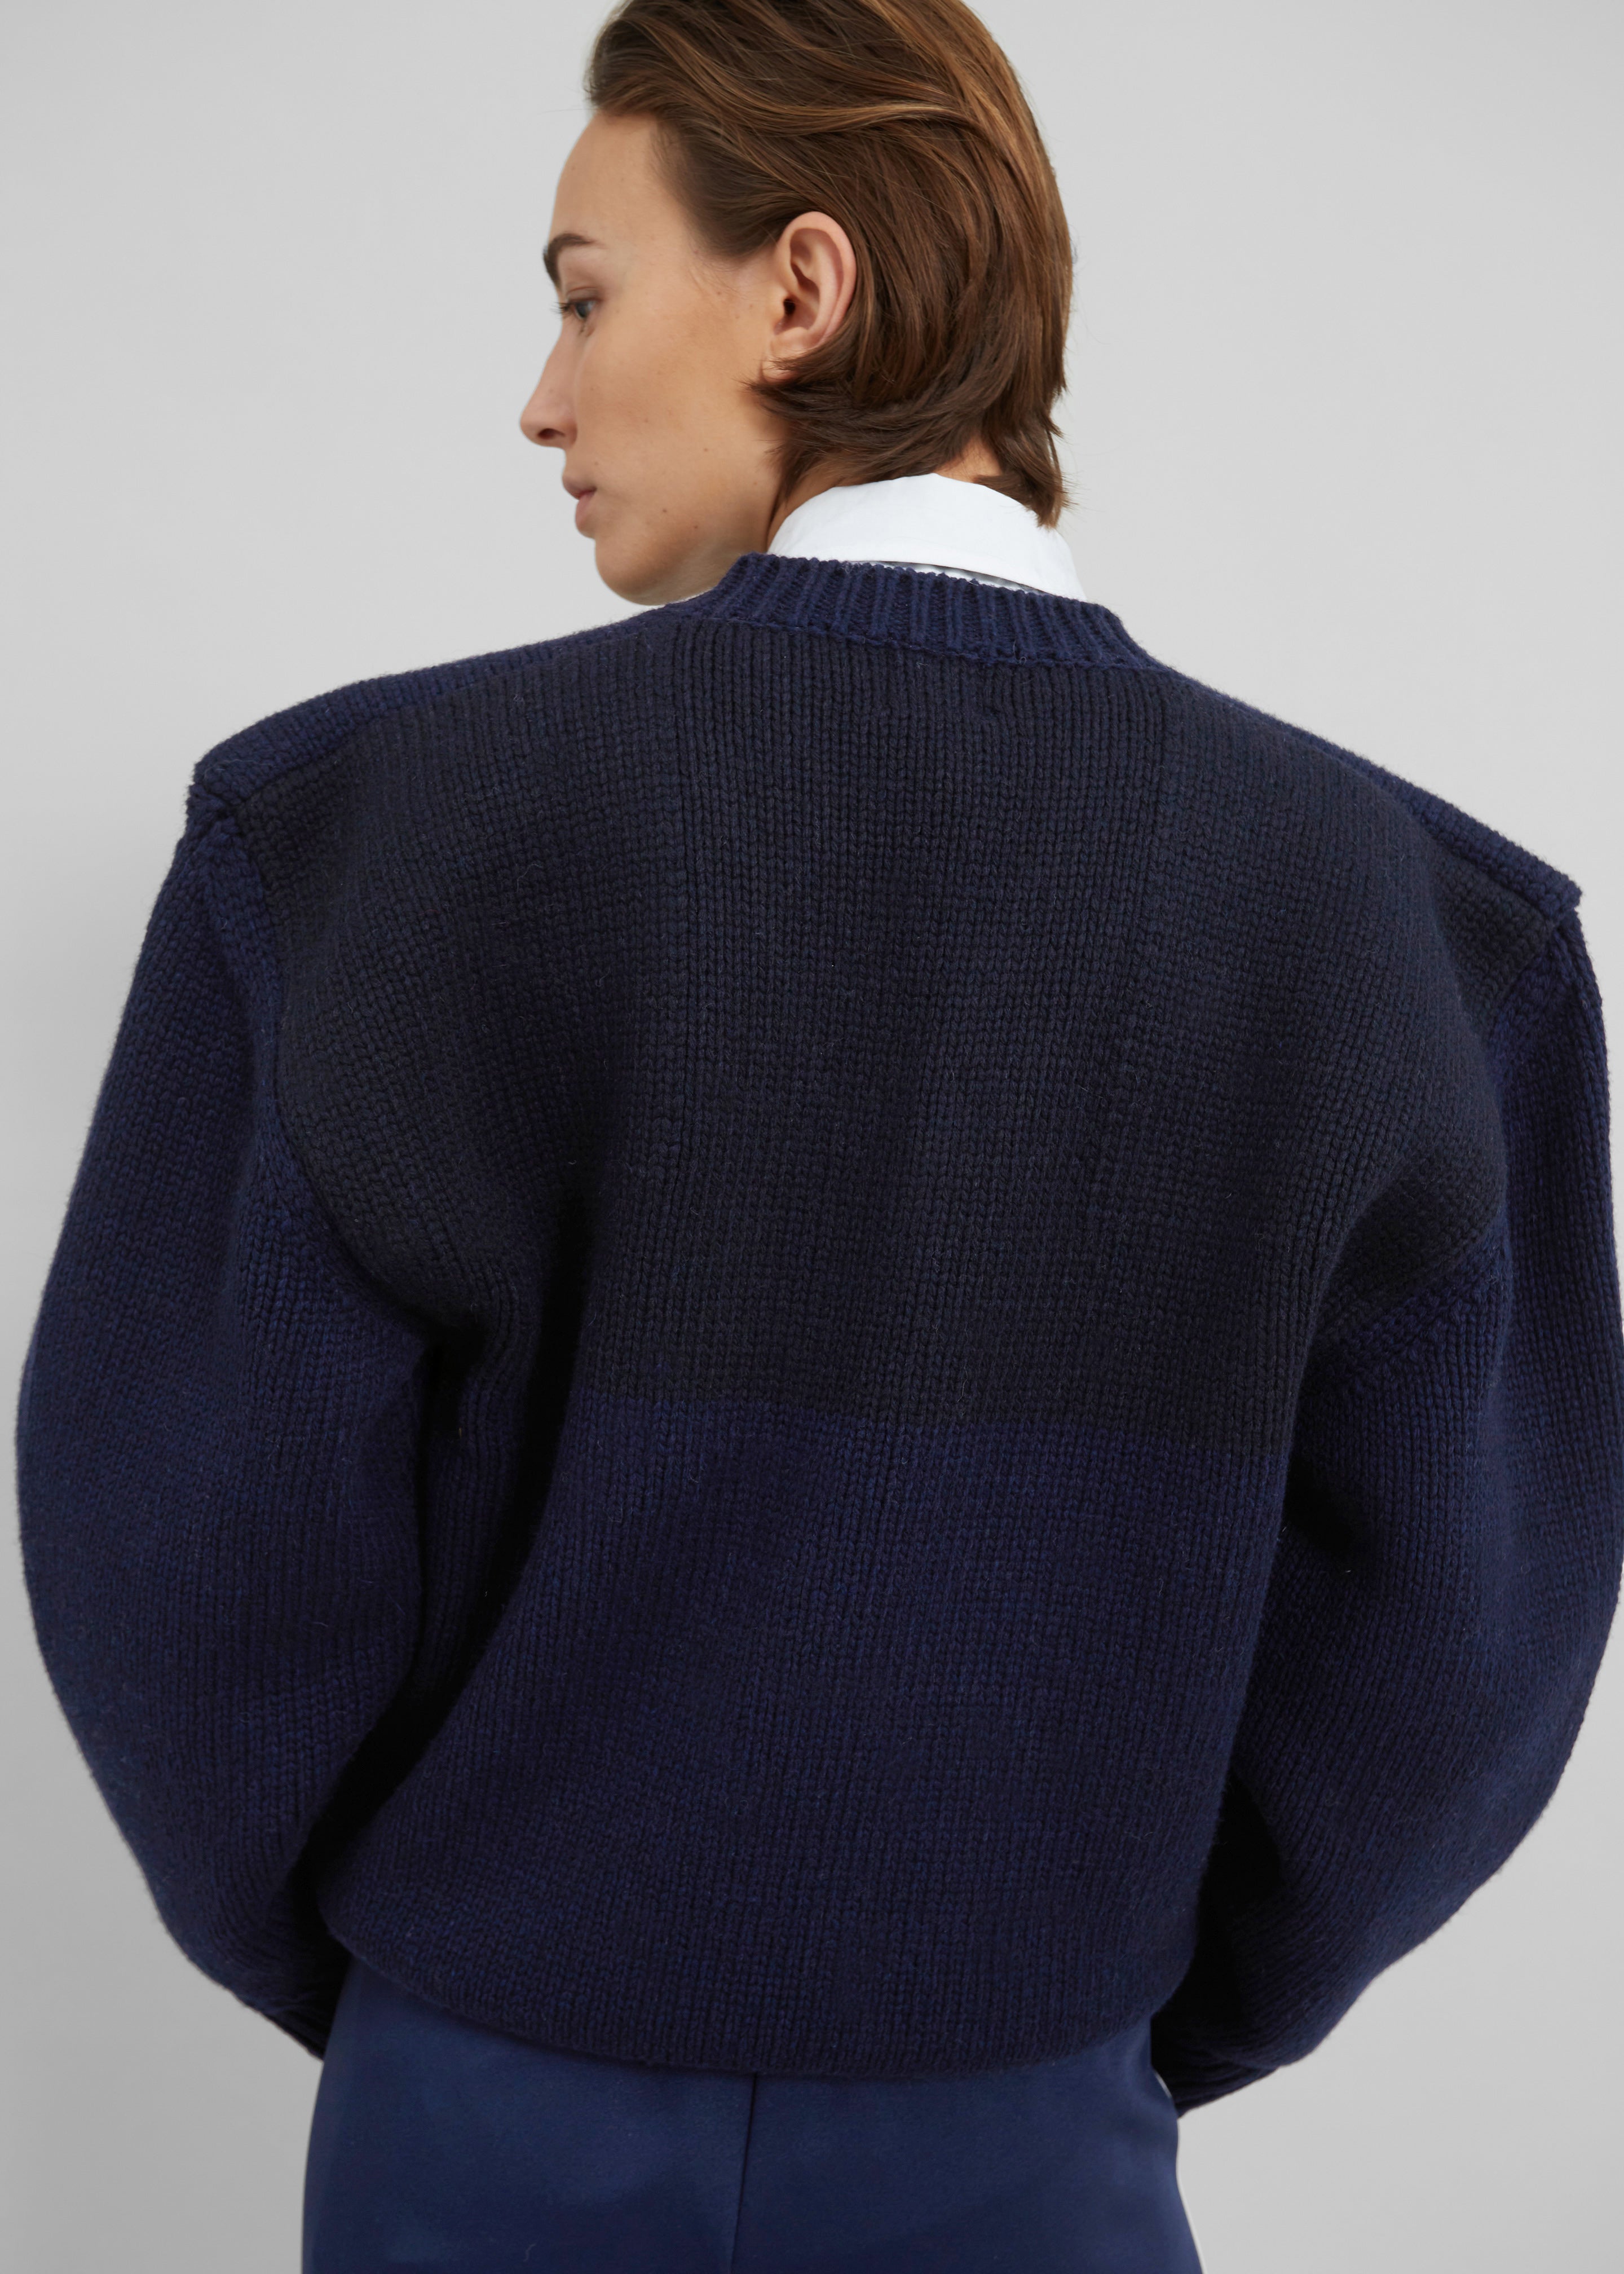 Edina Two Tone Wool Sweater - Navy - 3